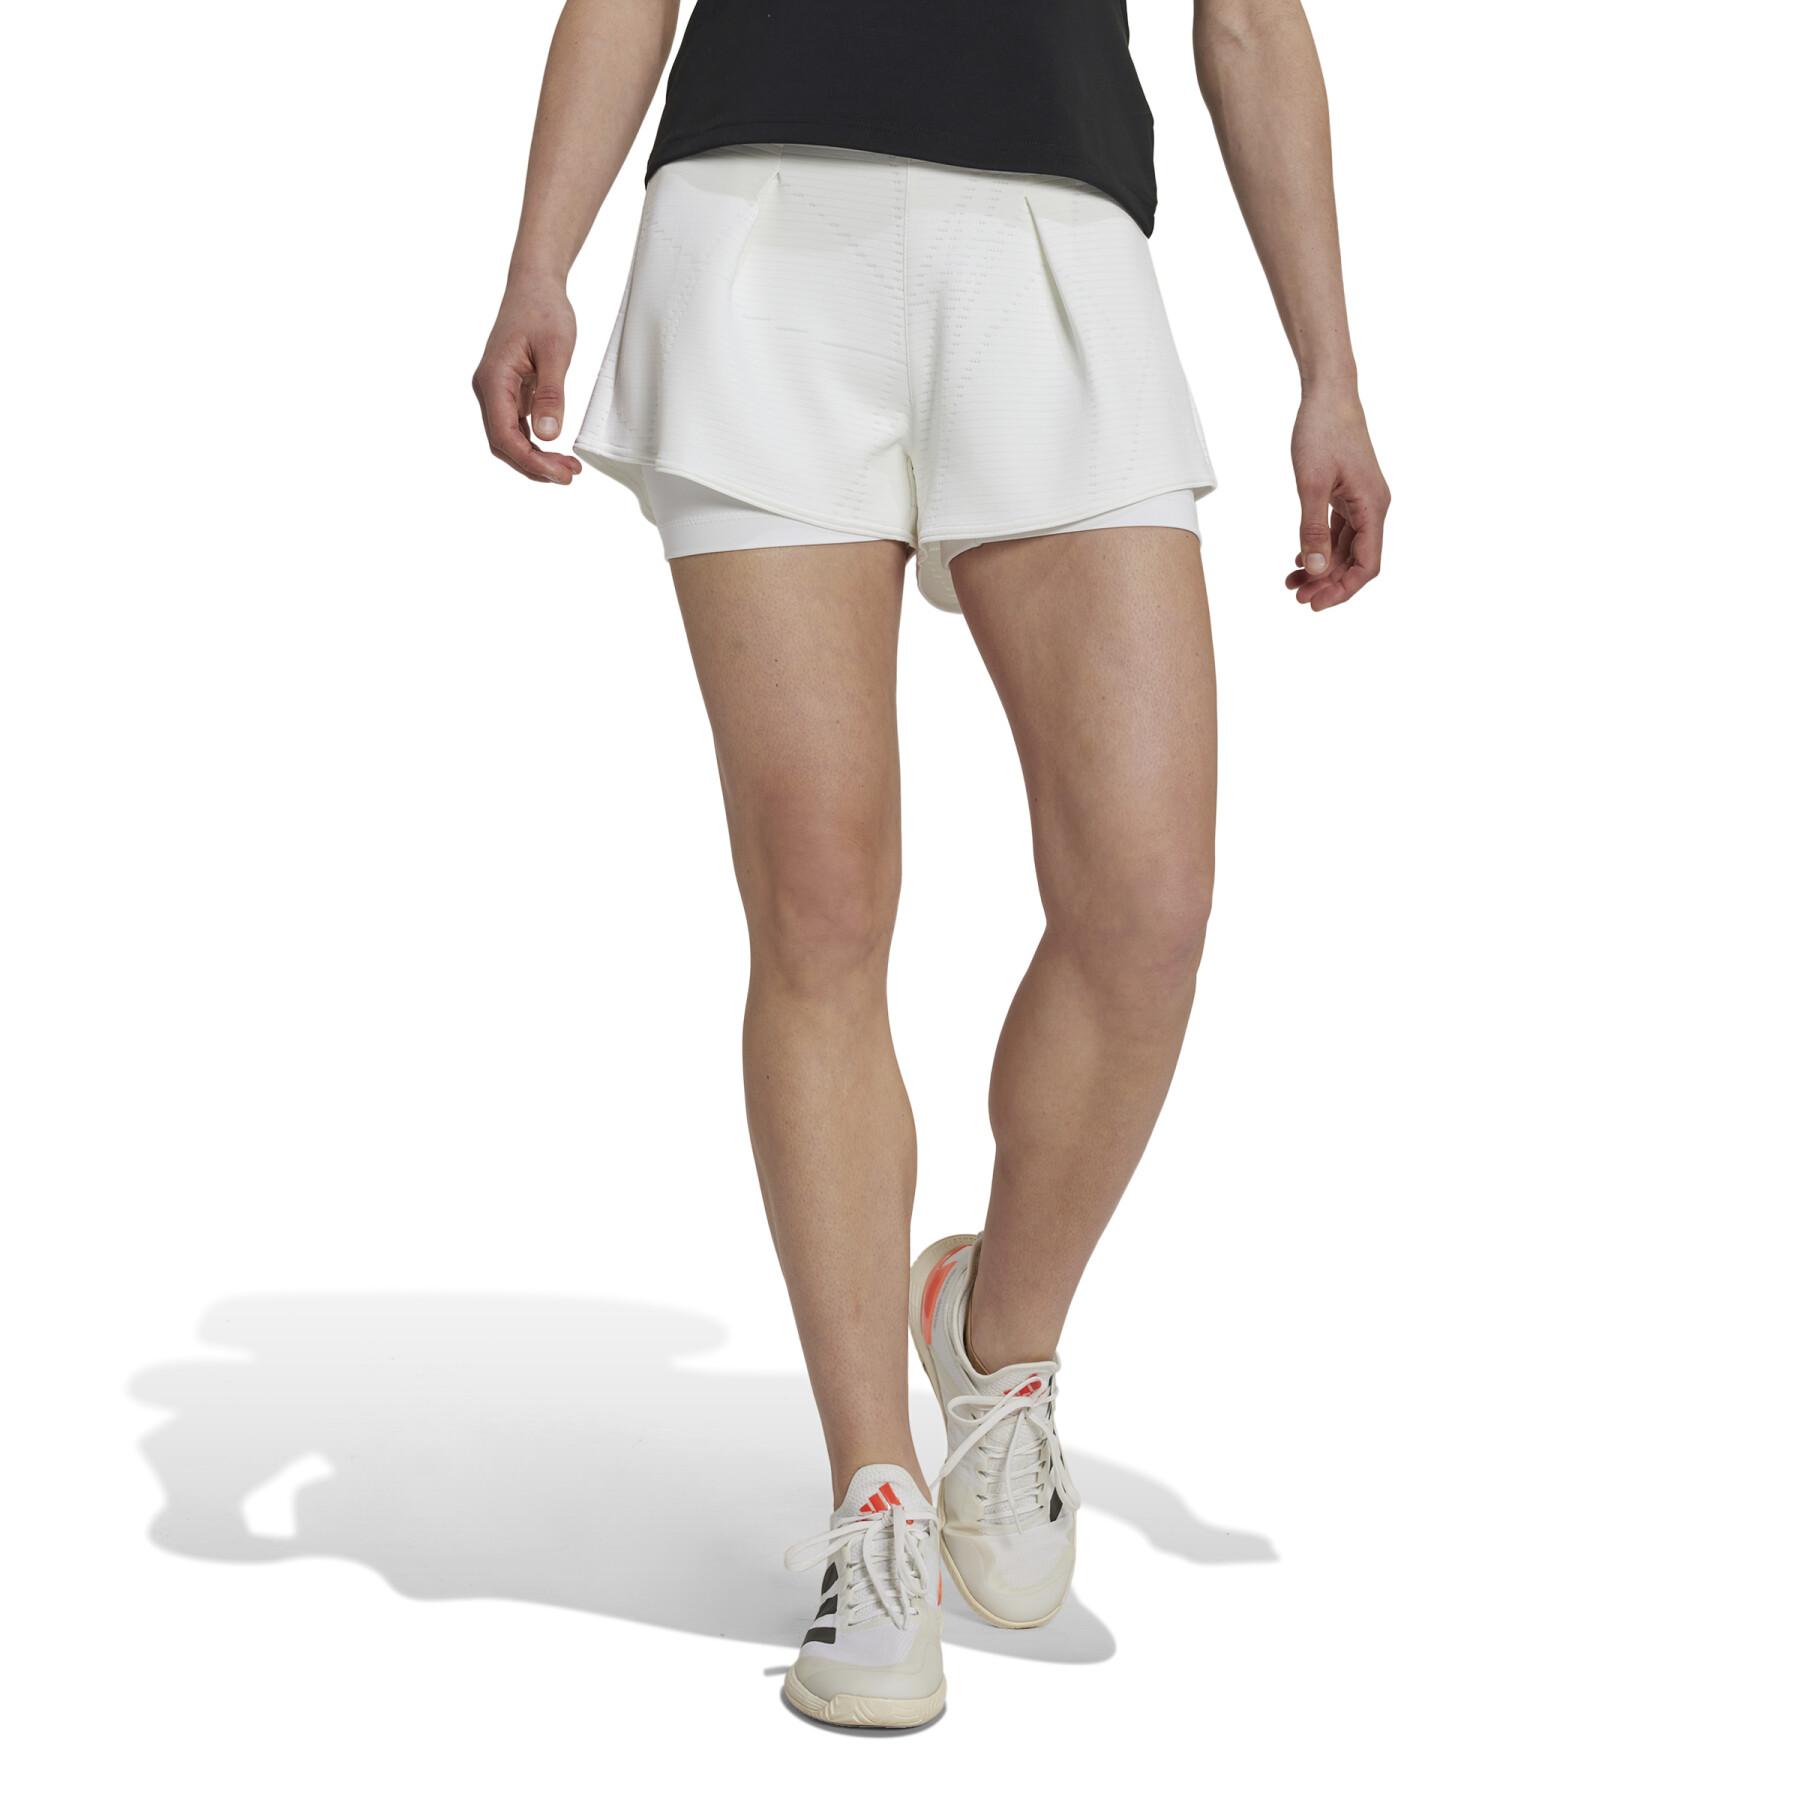 Pantalón corto de tenis mujer adidas London